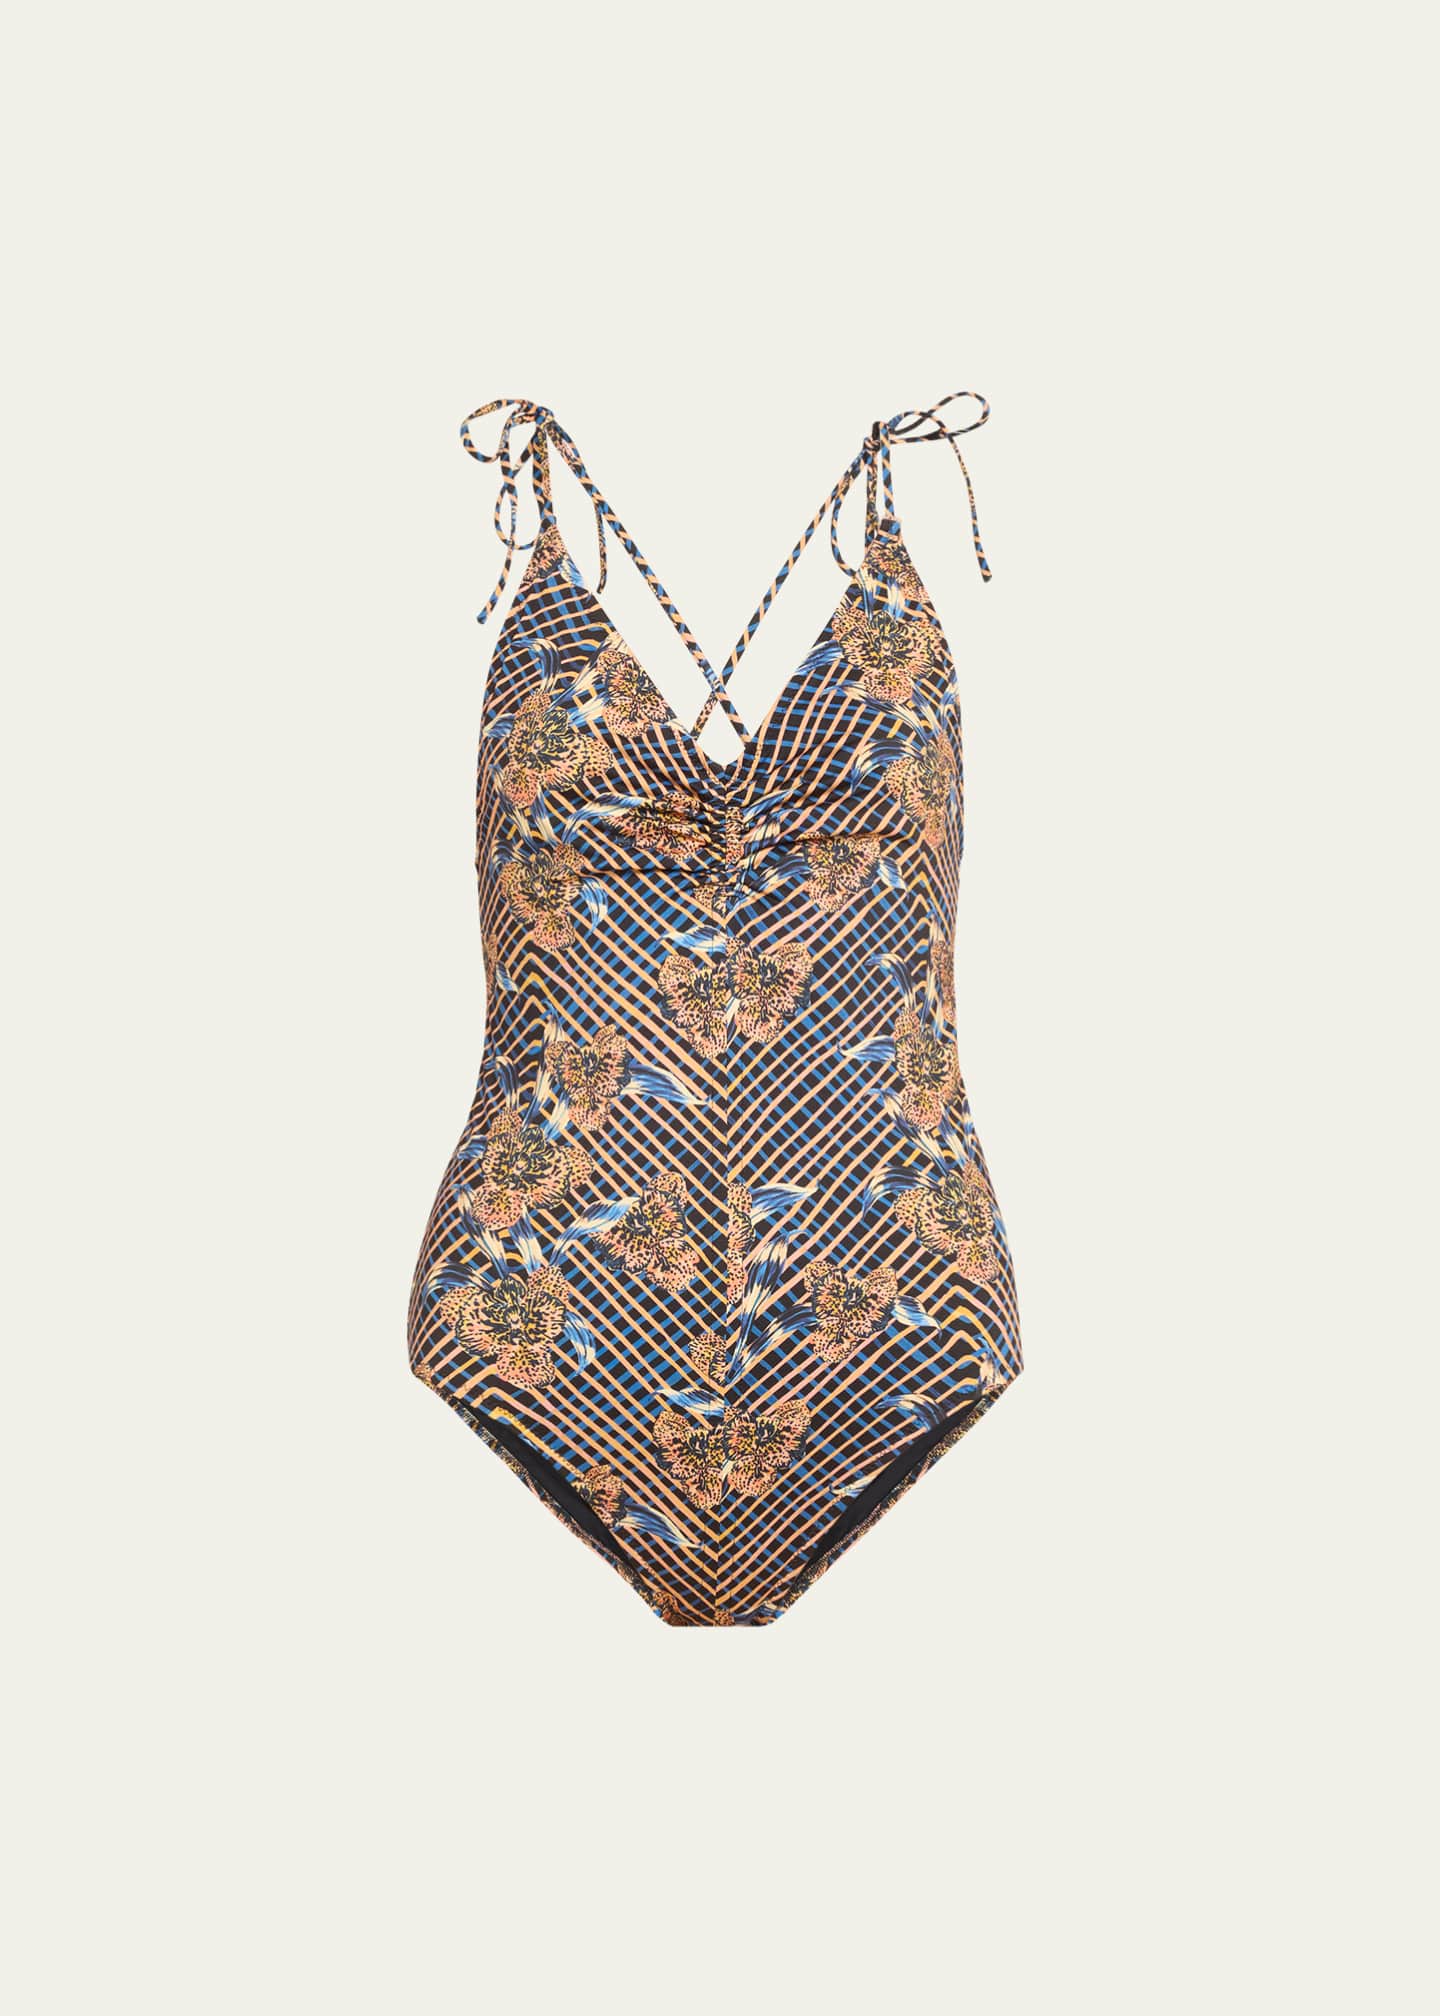 Ulla Johnson Nocturne Dali Strappy One-Piece Swimsuit - Bergdorf Goodman